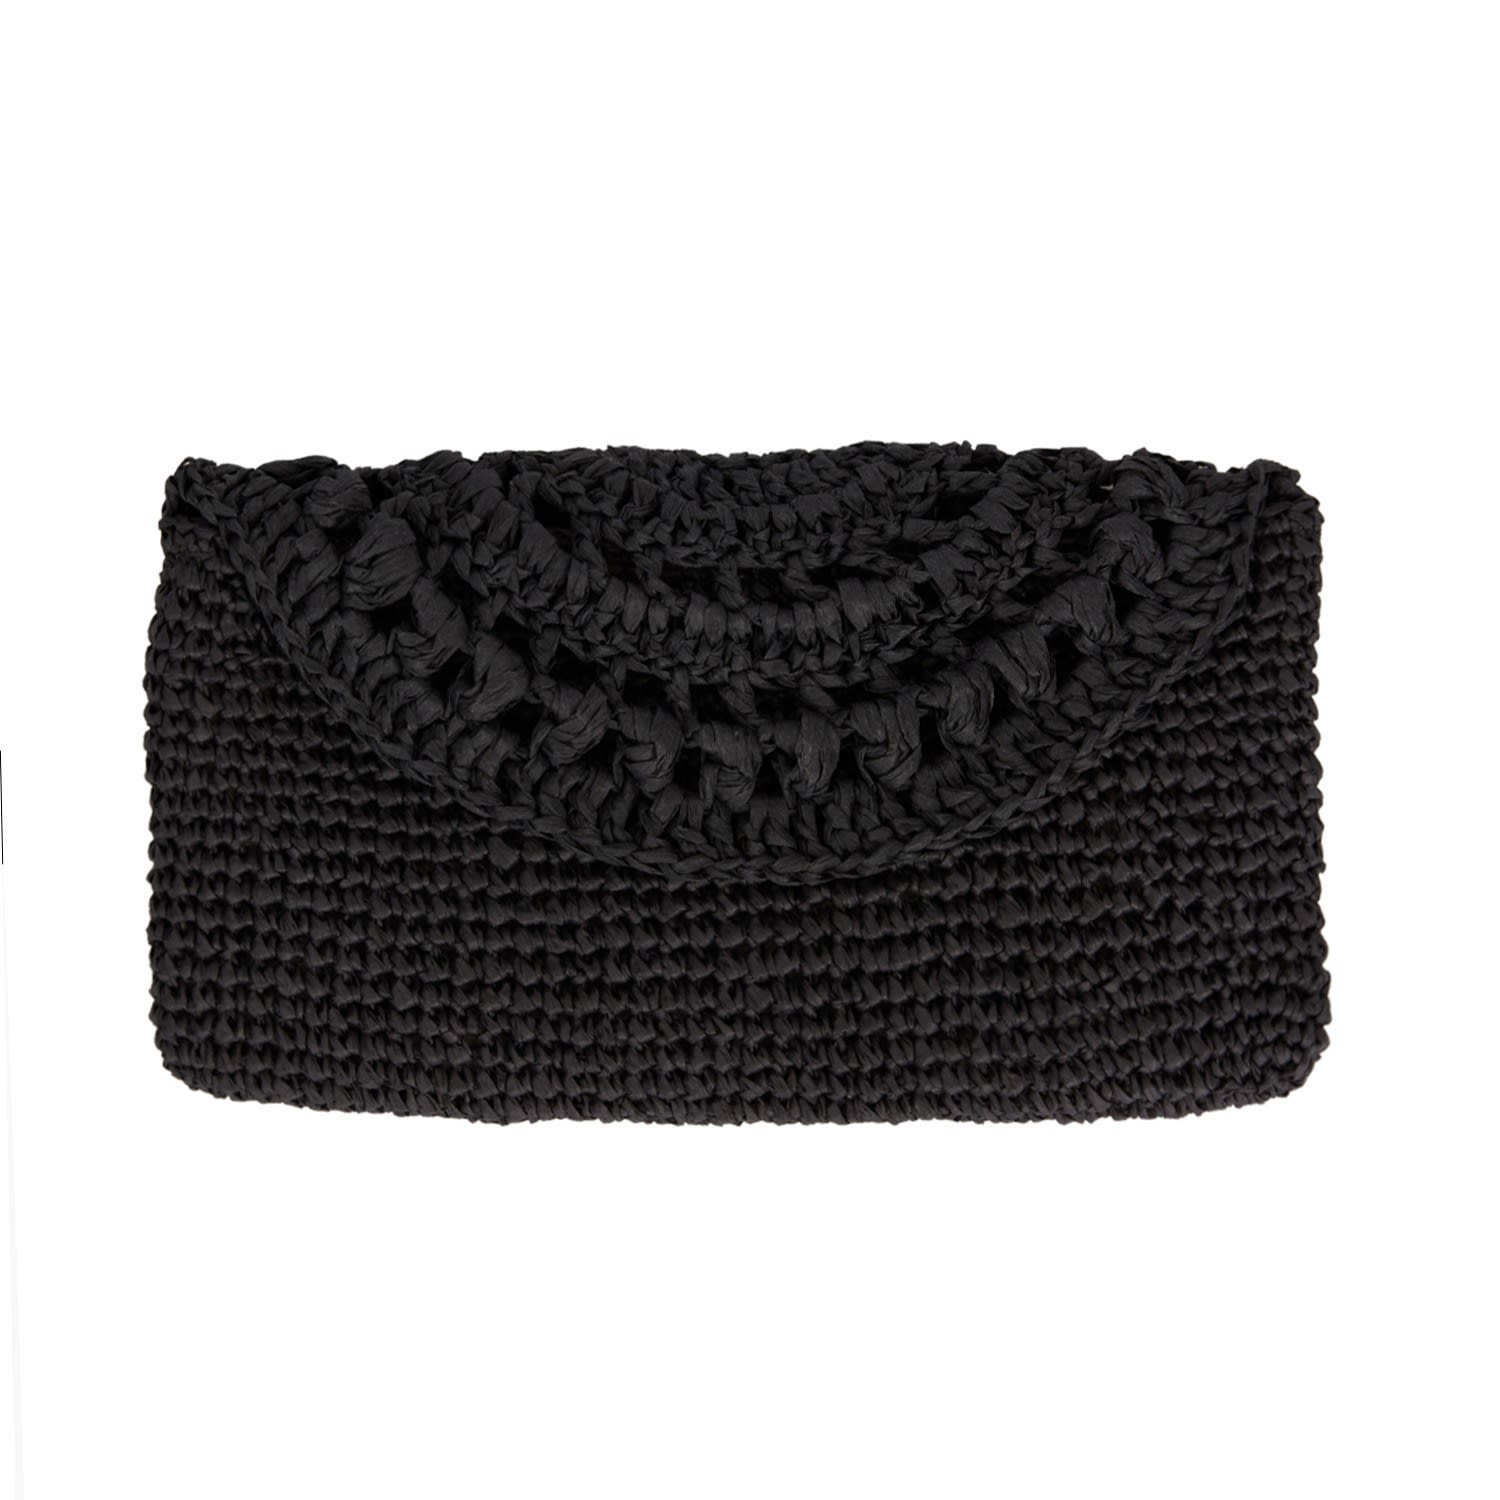 N'onat Women's Cunda Crochet Clutch Bag In Black